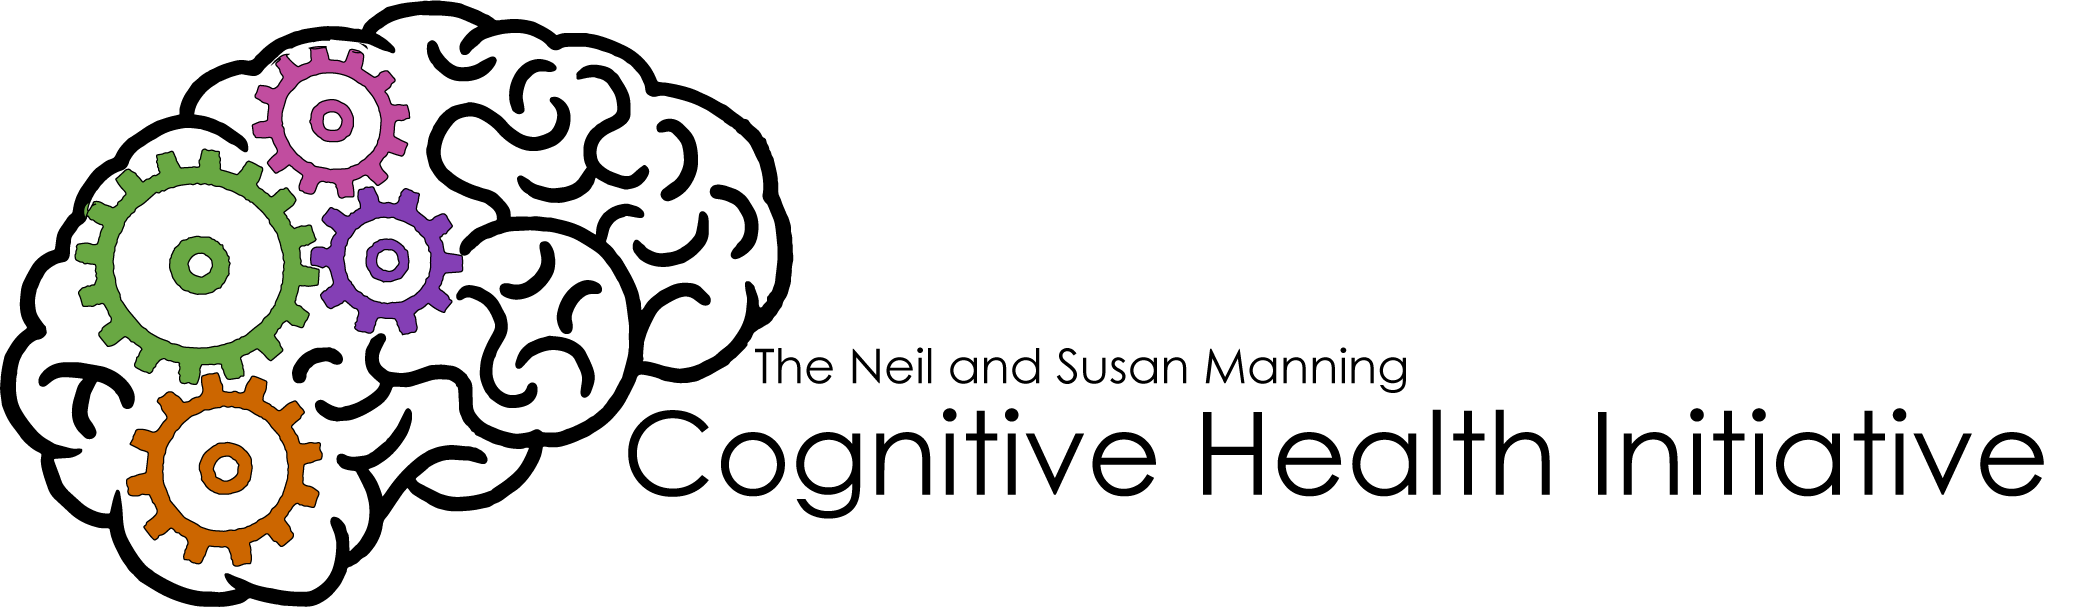 CHI logo.png